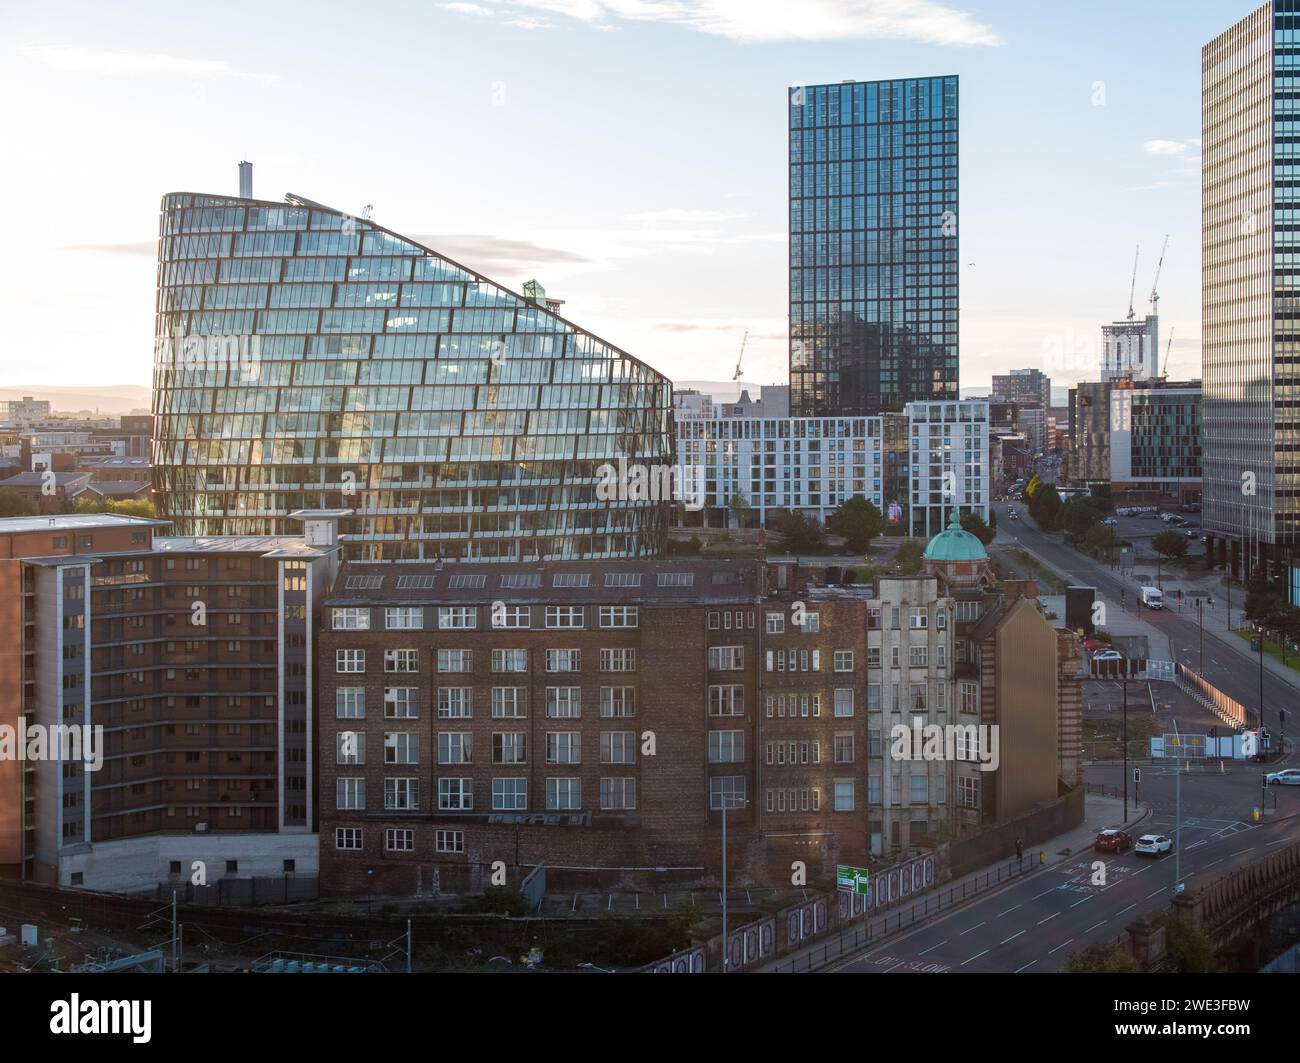 Photographie aérienne de One Angel Square, CIS Tower, MODA prise par une belle matinée ensoleillée dans le centre-ville de Manchester, Royaume-Uni Banque D'Images